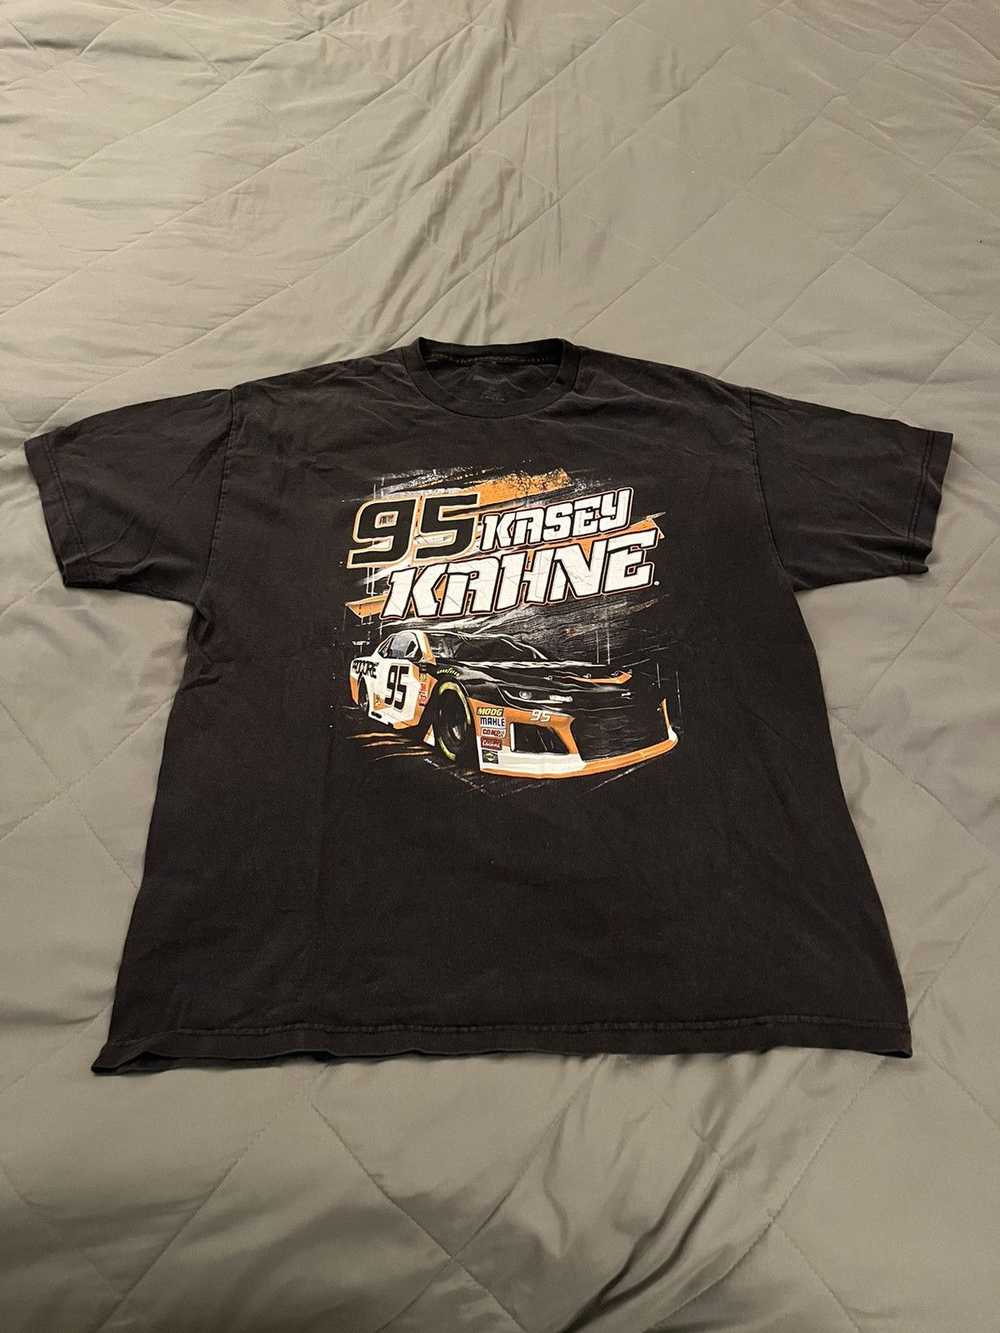 NASCAR × Streetwear NASCAR racing shirt - image 1